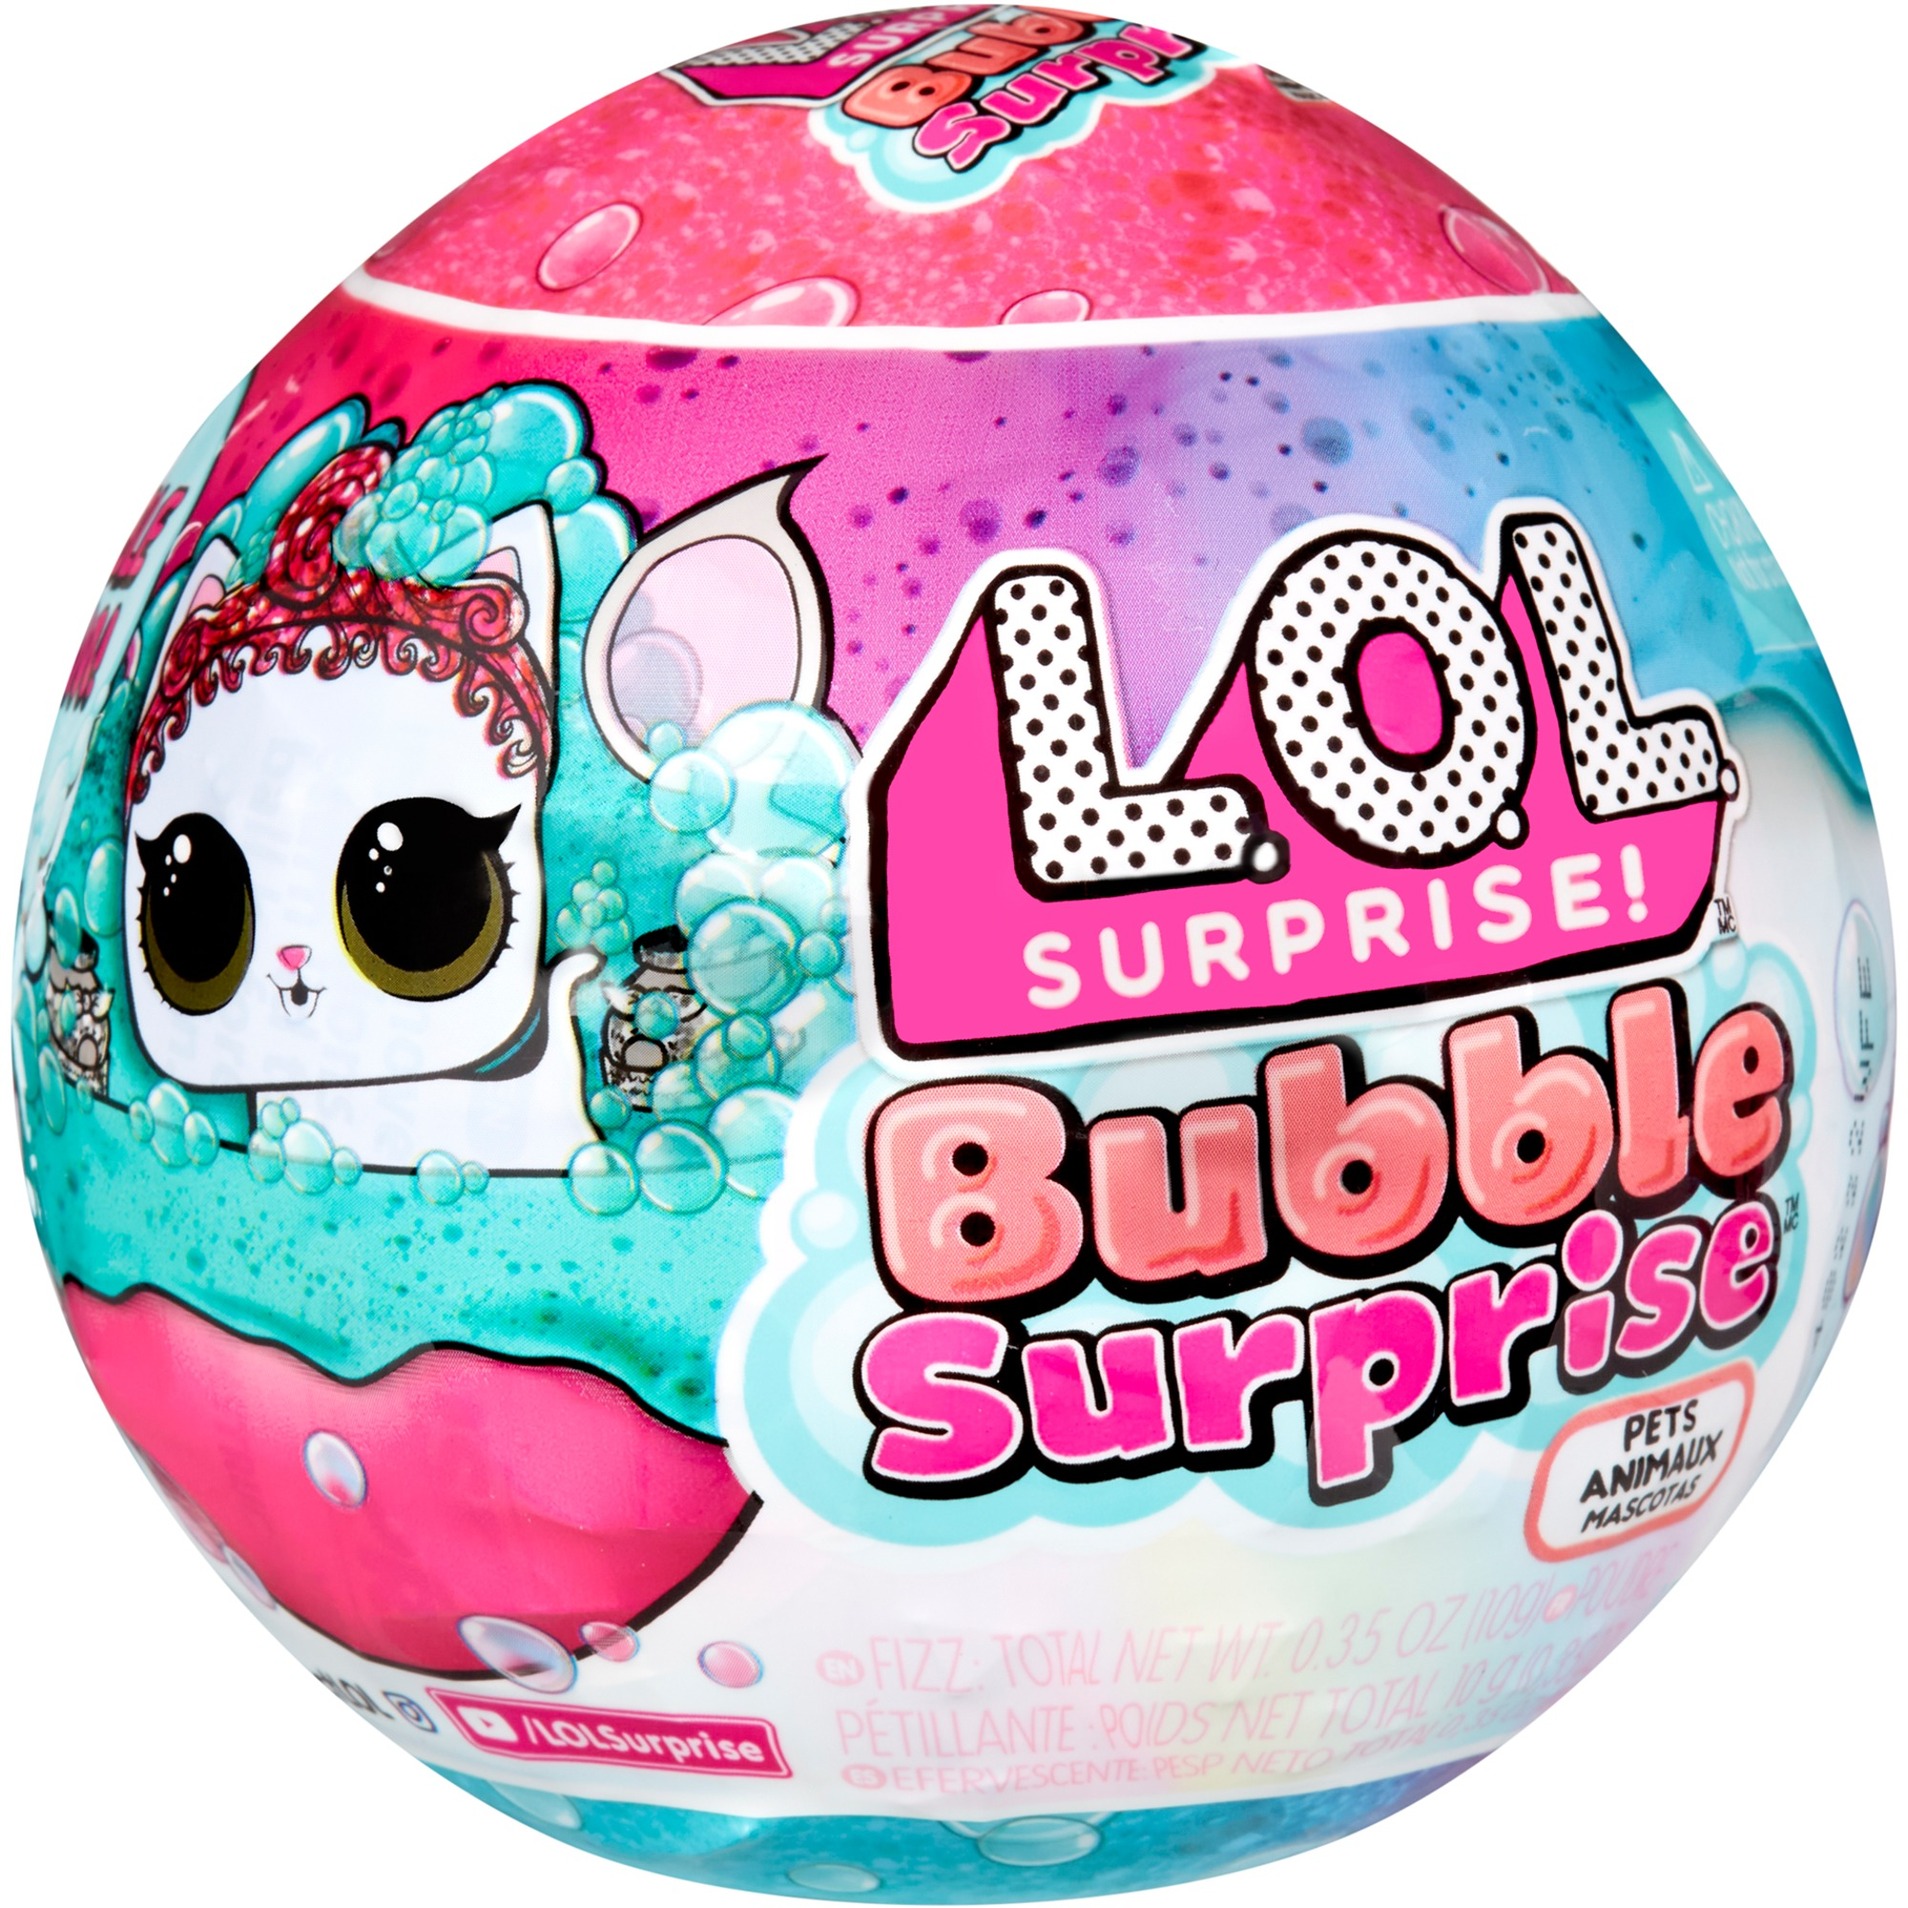 L.O.L. Surprise Bubble Surprise Pets, Spielfigur von MGA Entertainment